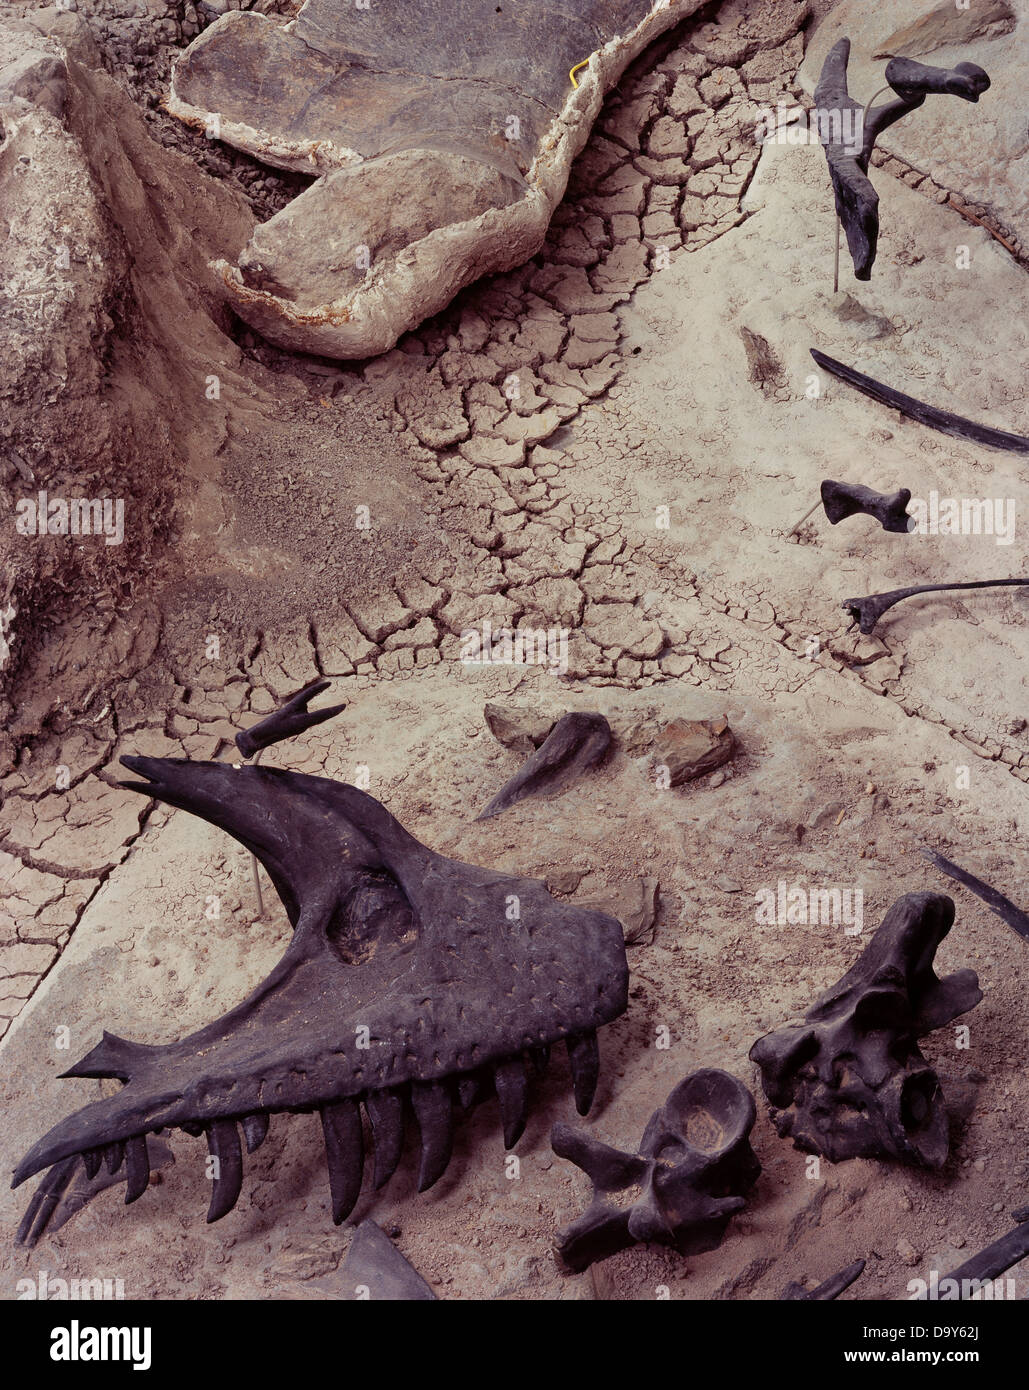 Assemblage Jurassic Morrison formazione fossili di dinosauro prevalentemente Allosaurs protetto al di sotto della cava Cleveland-Lloyd costruzione Foto Stock